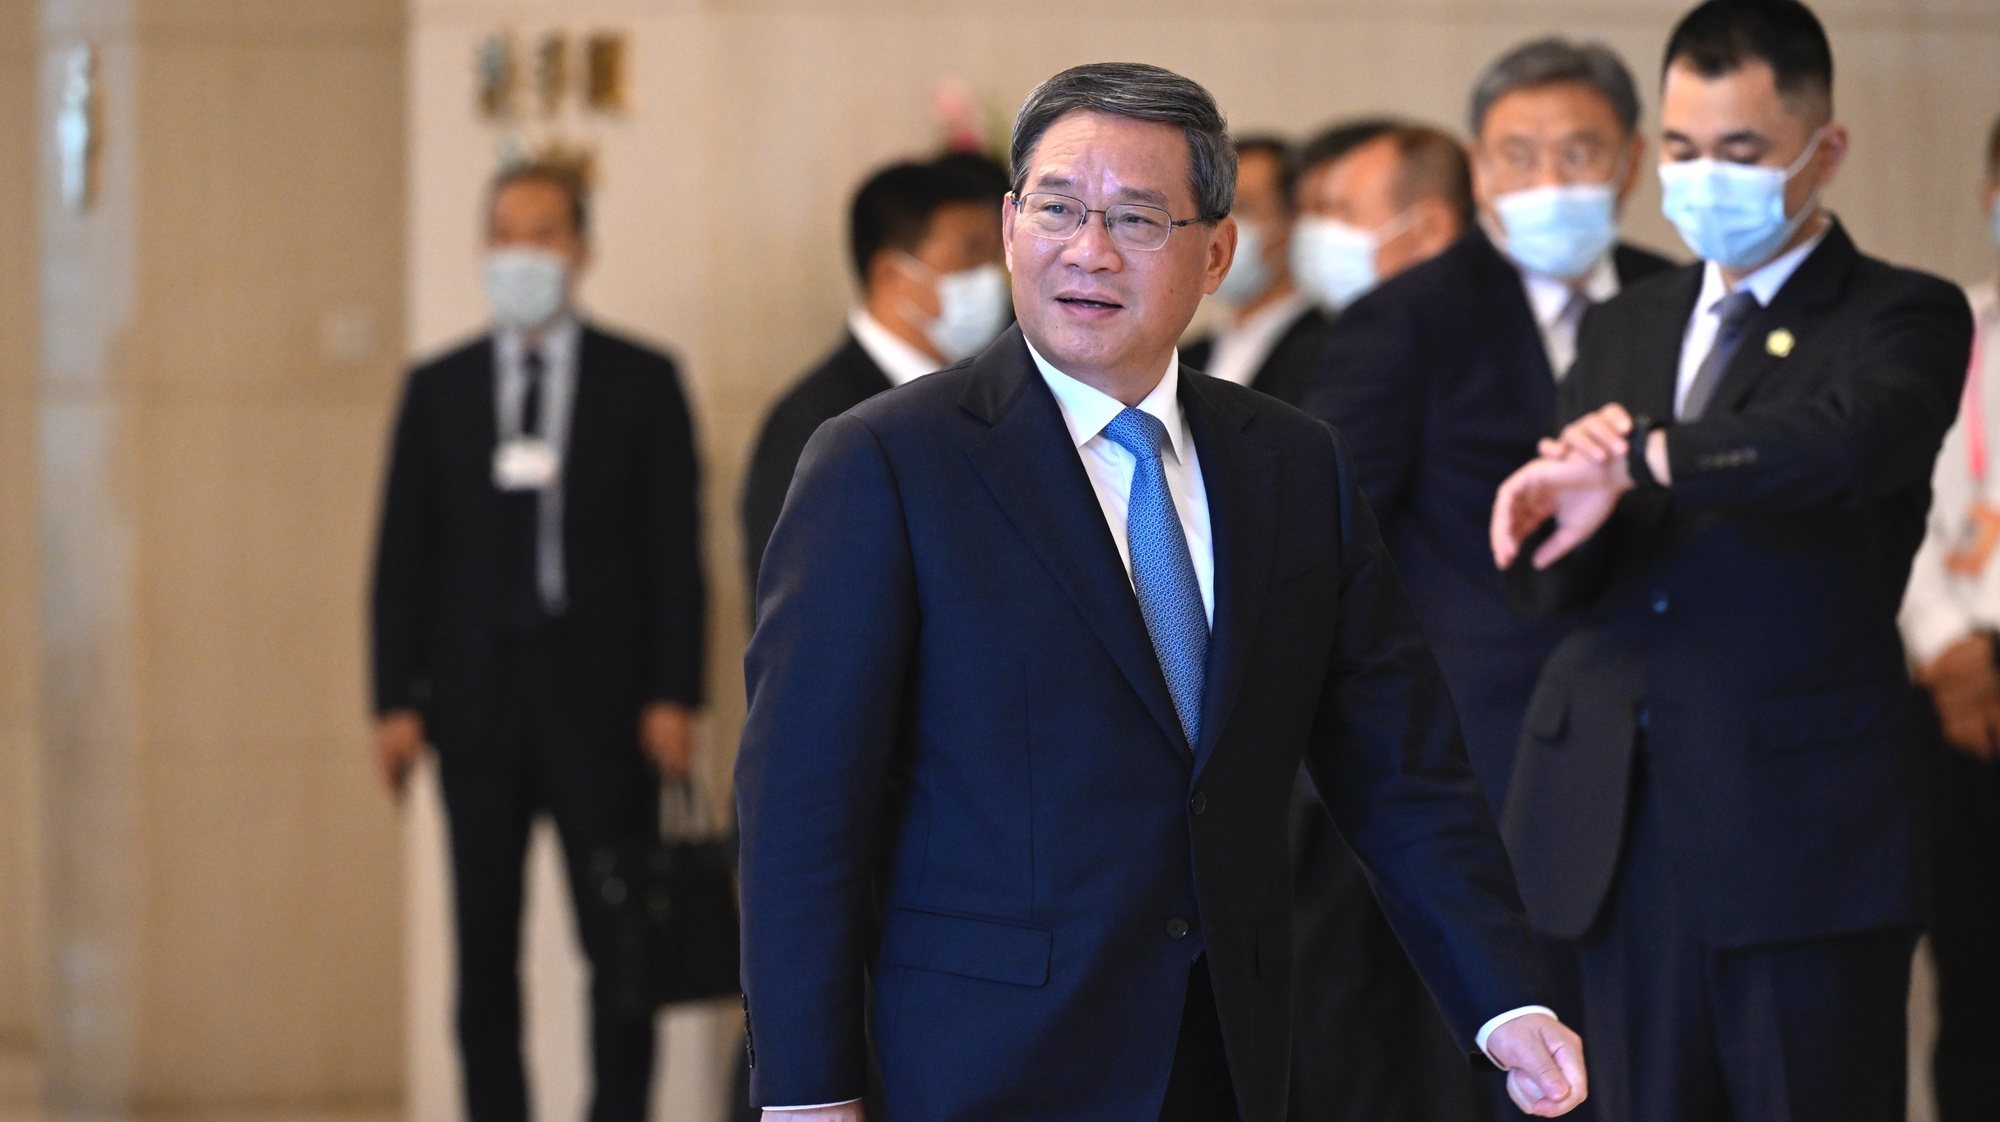 Ásia/Economia: A China lamenta os apelos ocidentais para reduzir os laços económicos